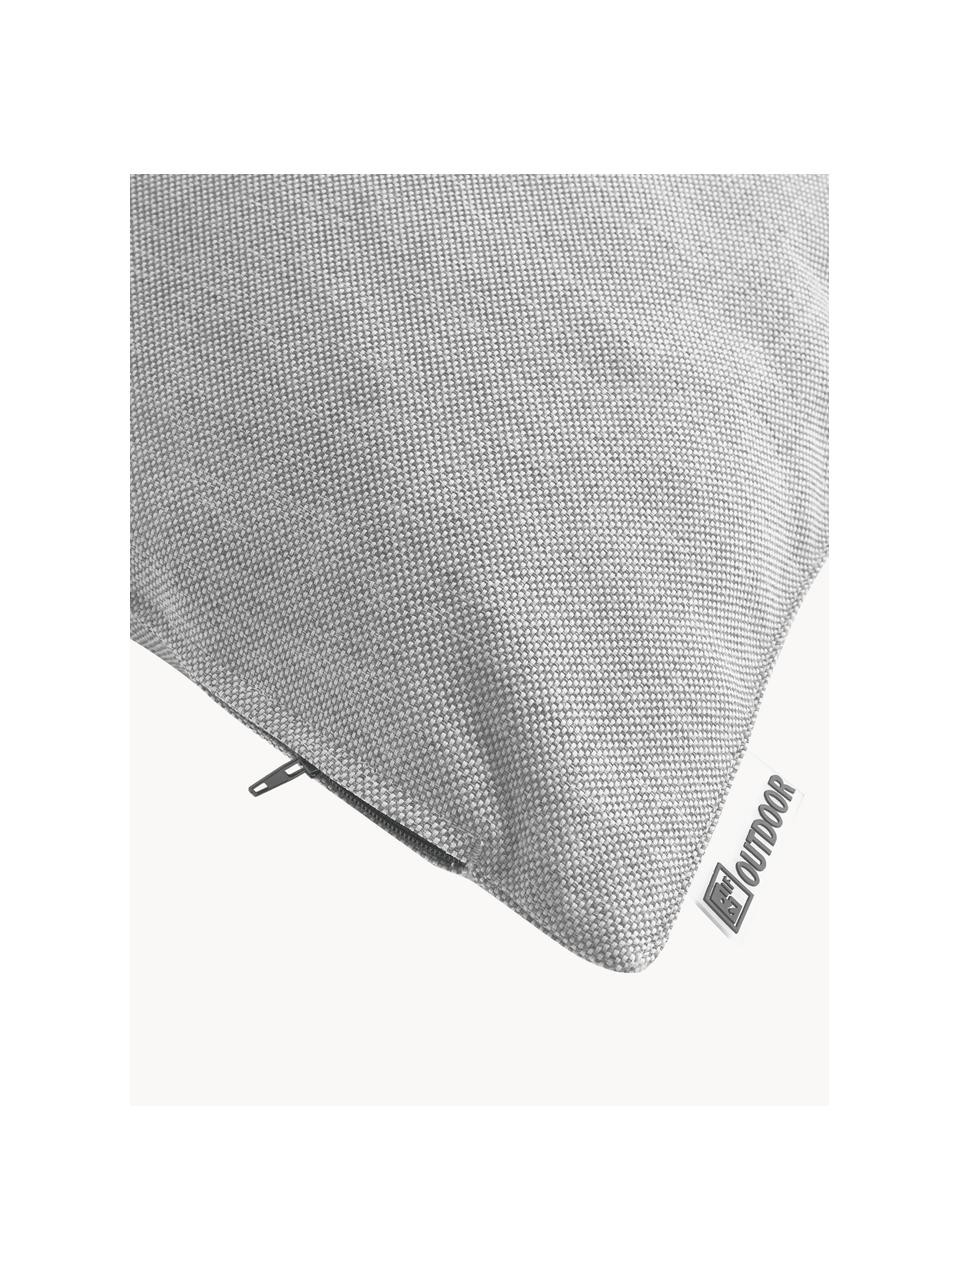 Zewnętrzna poduszka Olef, 100% bawełna, Jasny szary, S 45 x D 45 cm